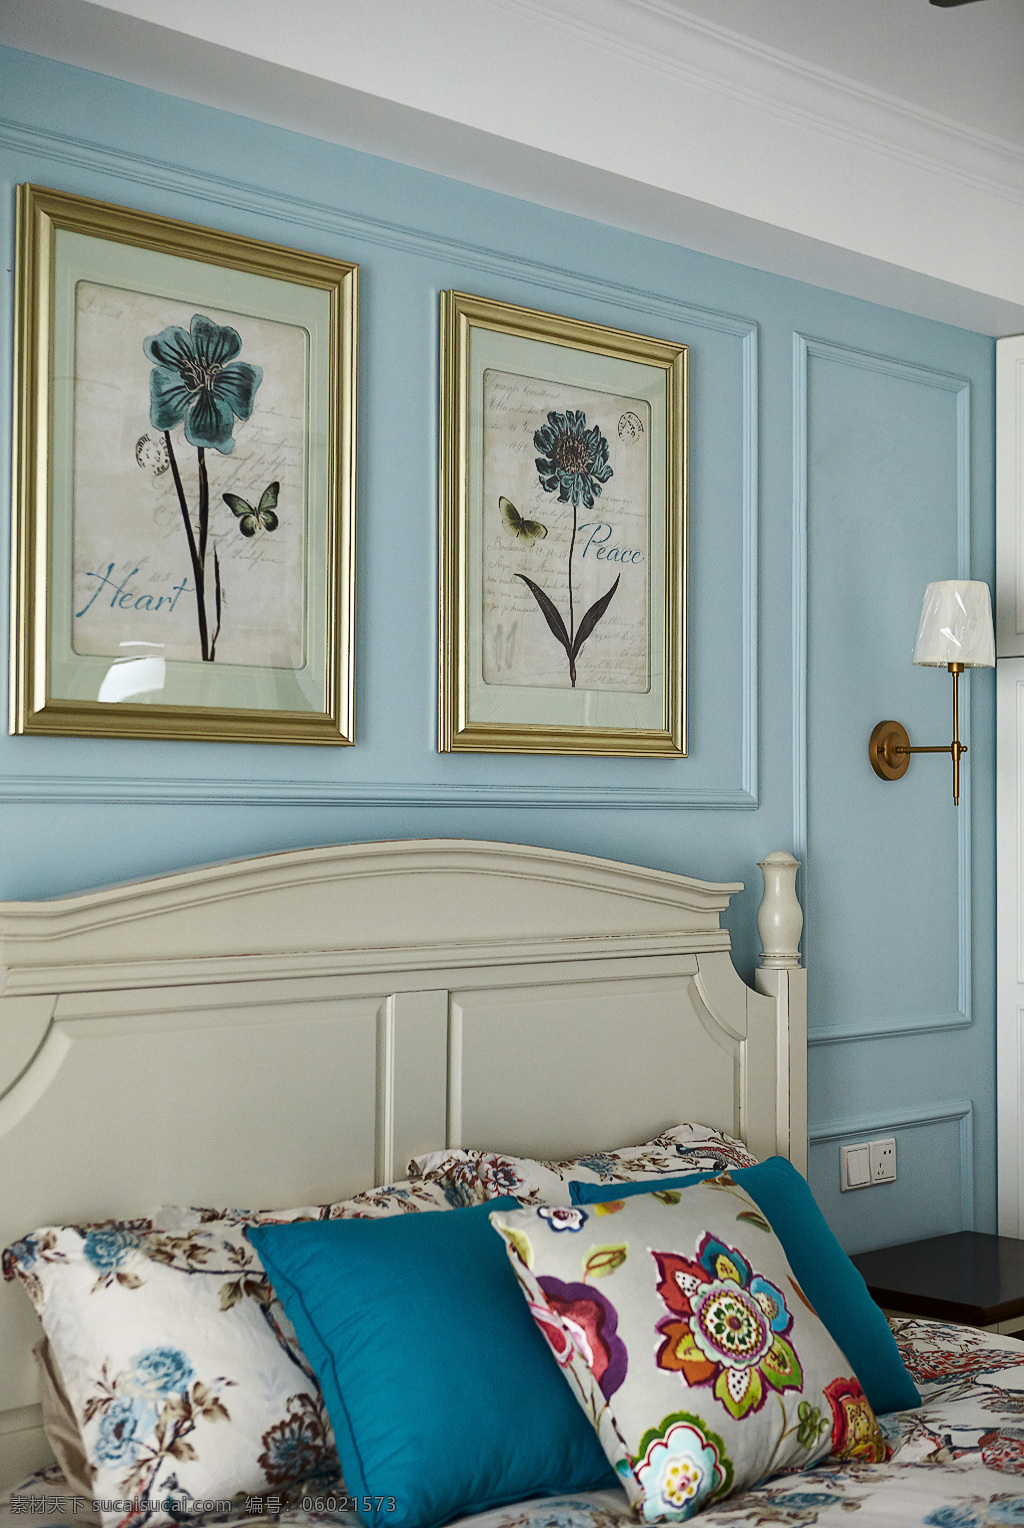 卧室 印花 被子 家装 效果图 室内 抱枕 床 花朵画 装饰 淡蓝墙面 英文 台灯